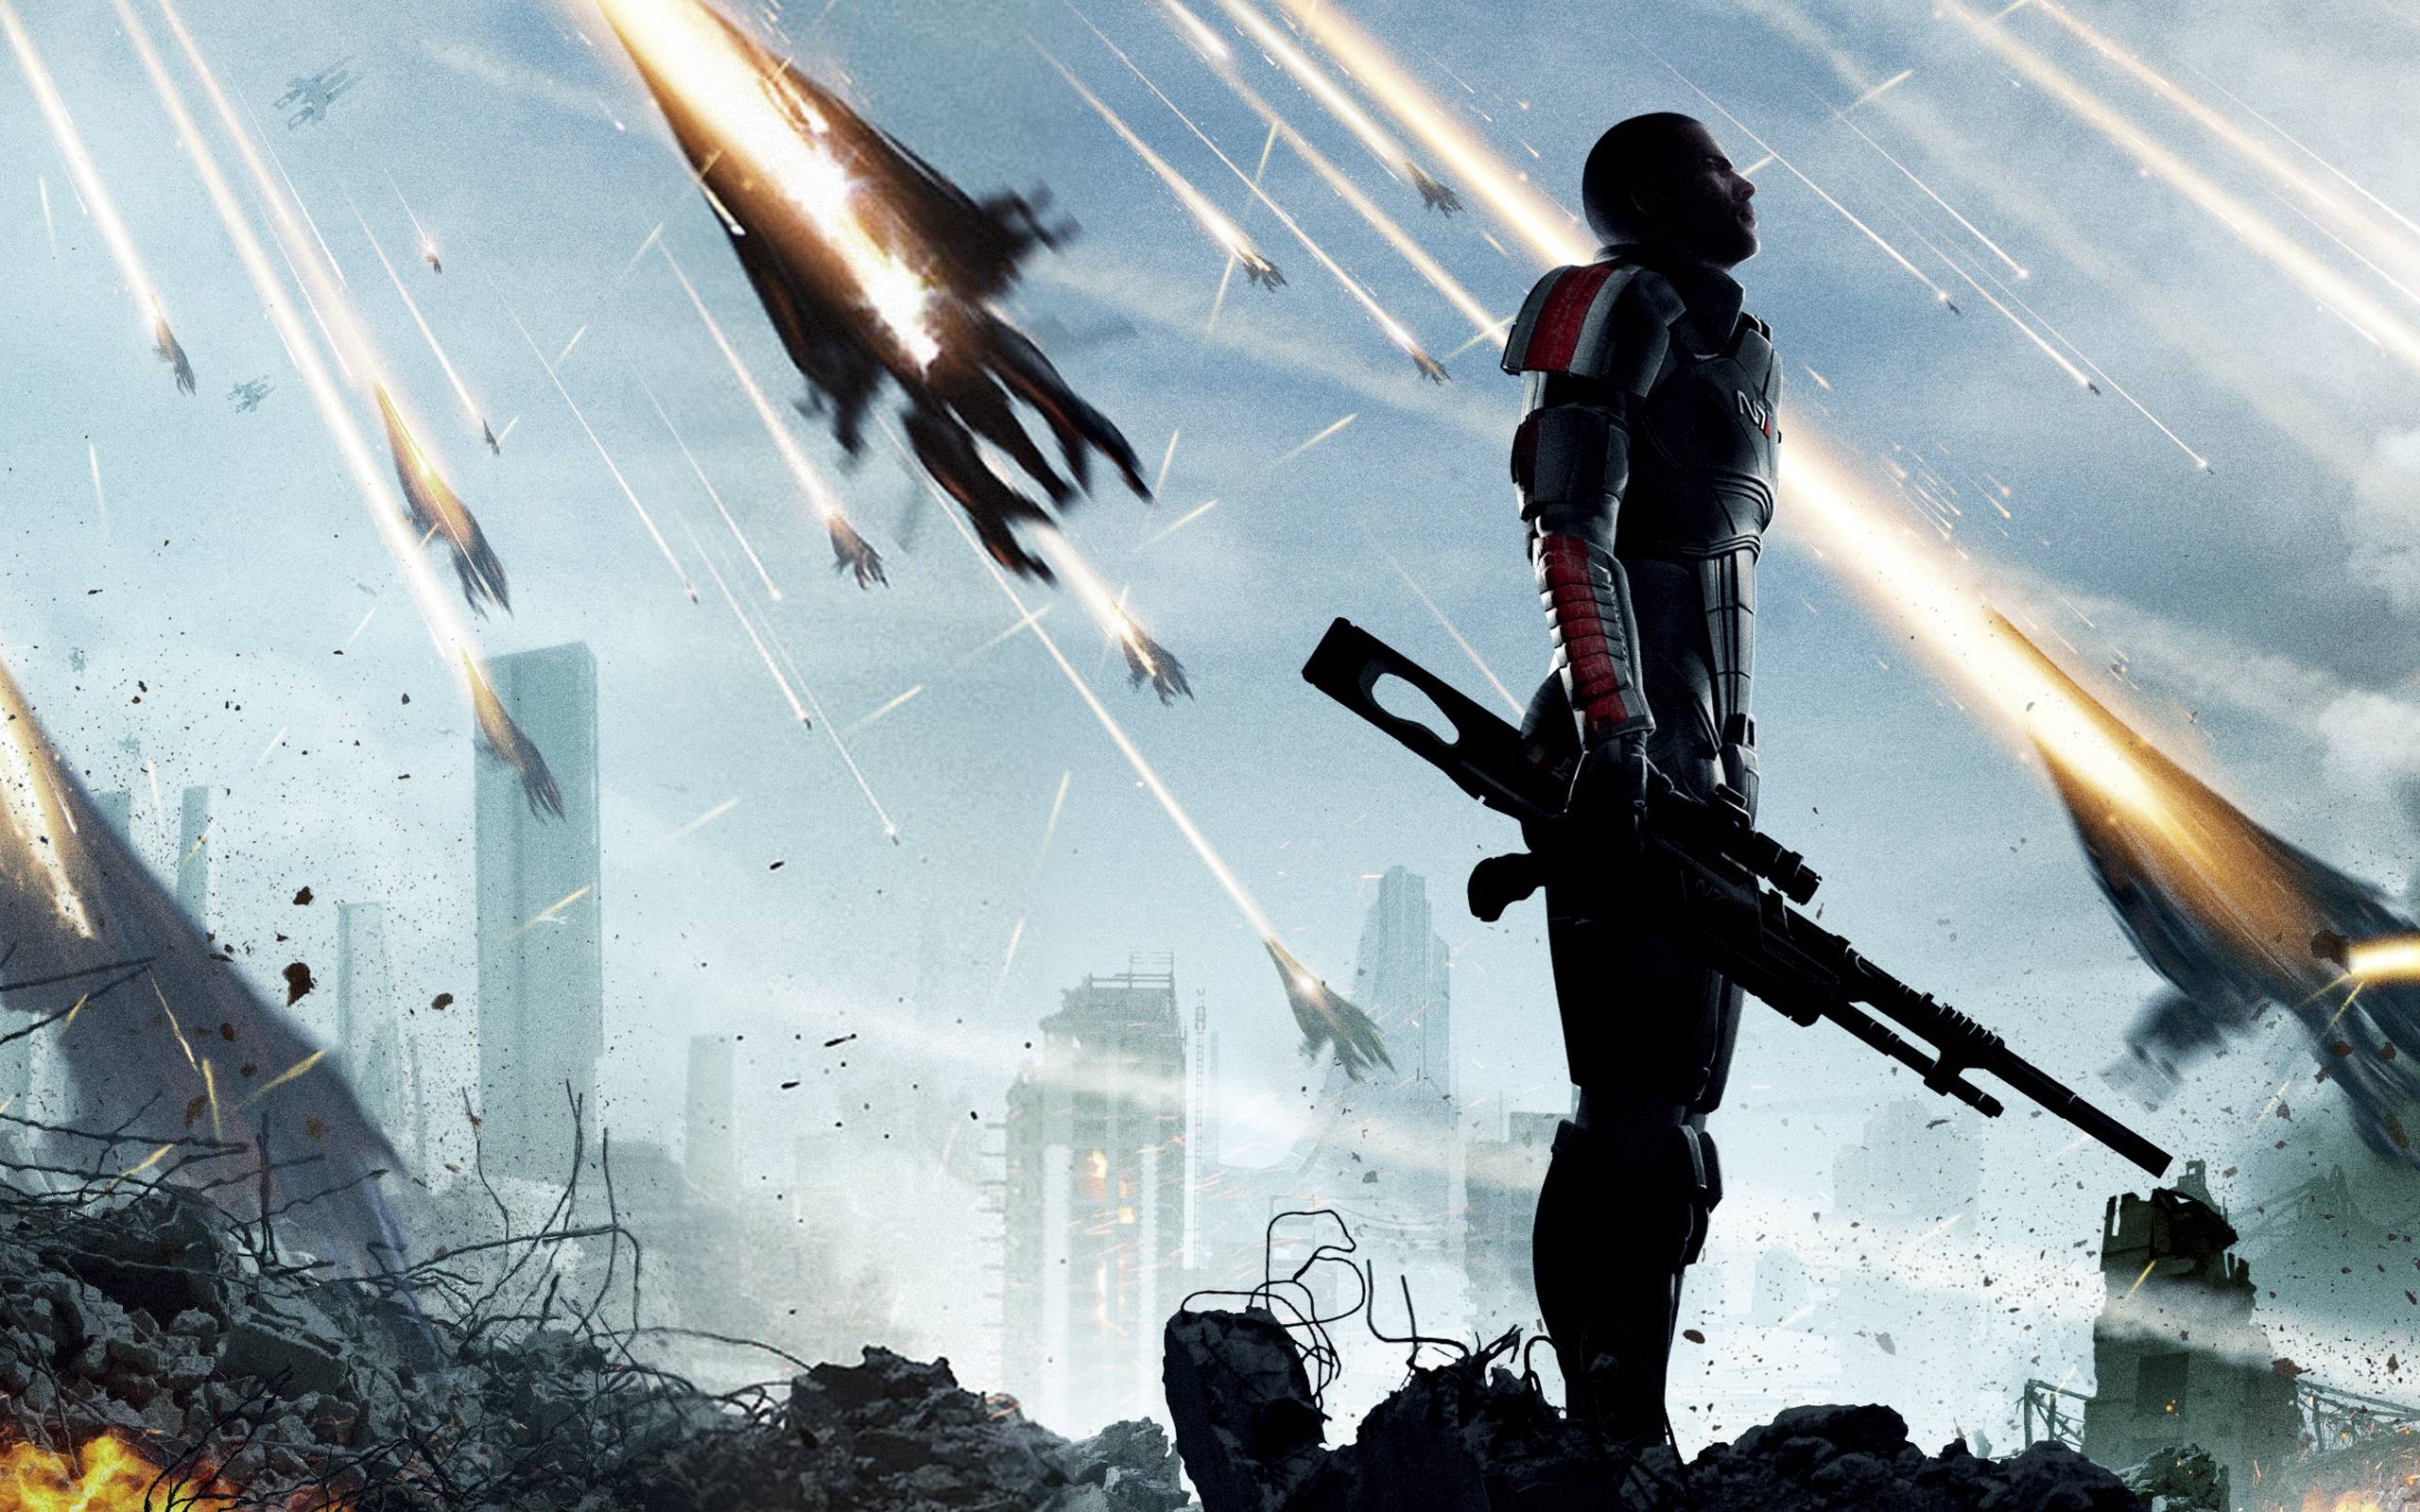 Mass Effect, Cool wallpaper, Stunning artistry, Game-inspired visuals, 2560x1600 HD Desktop